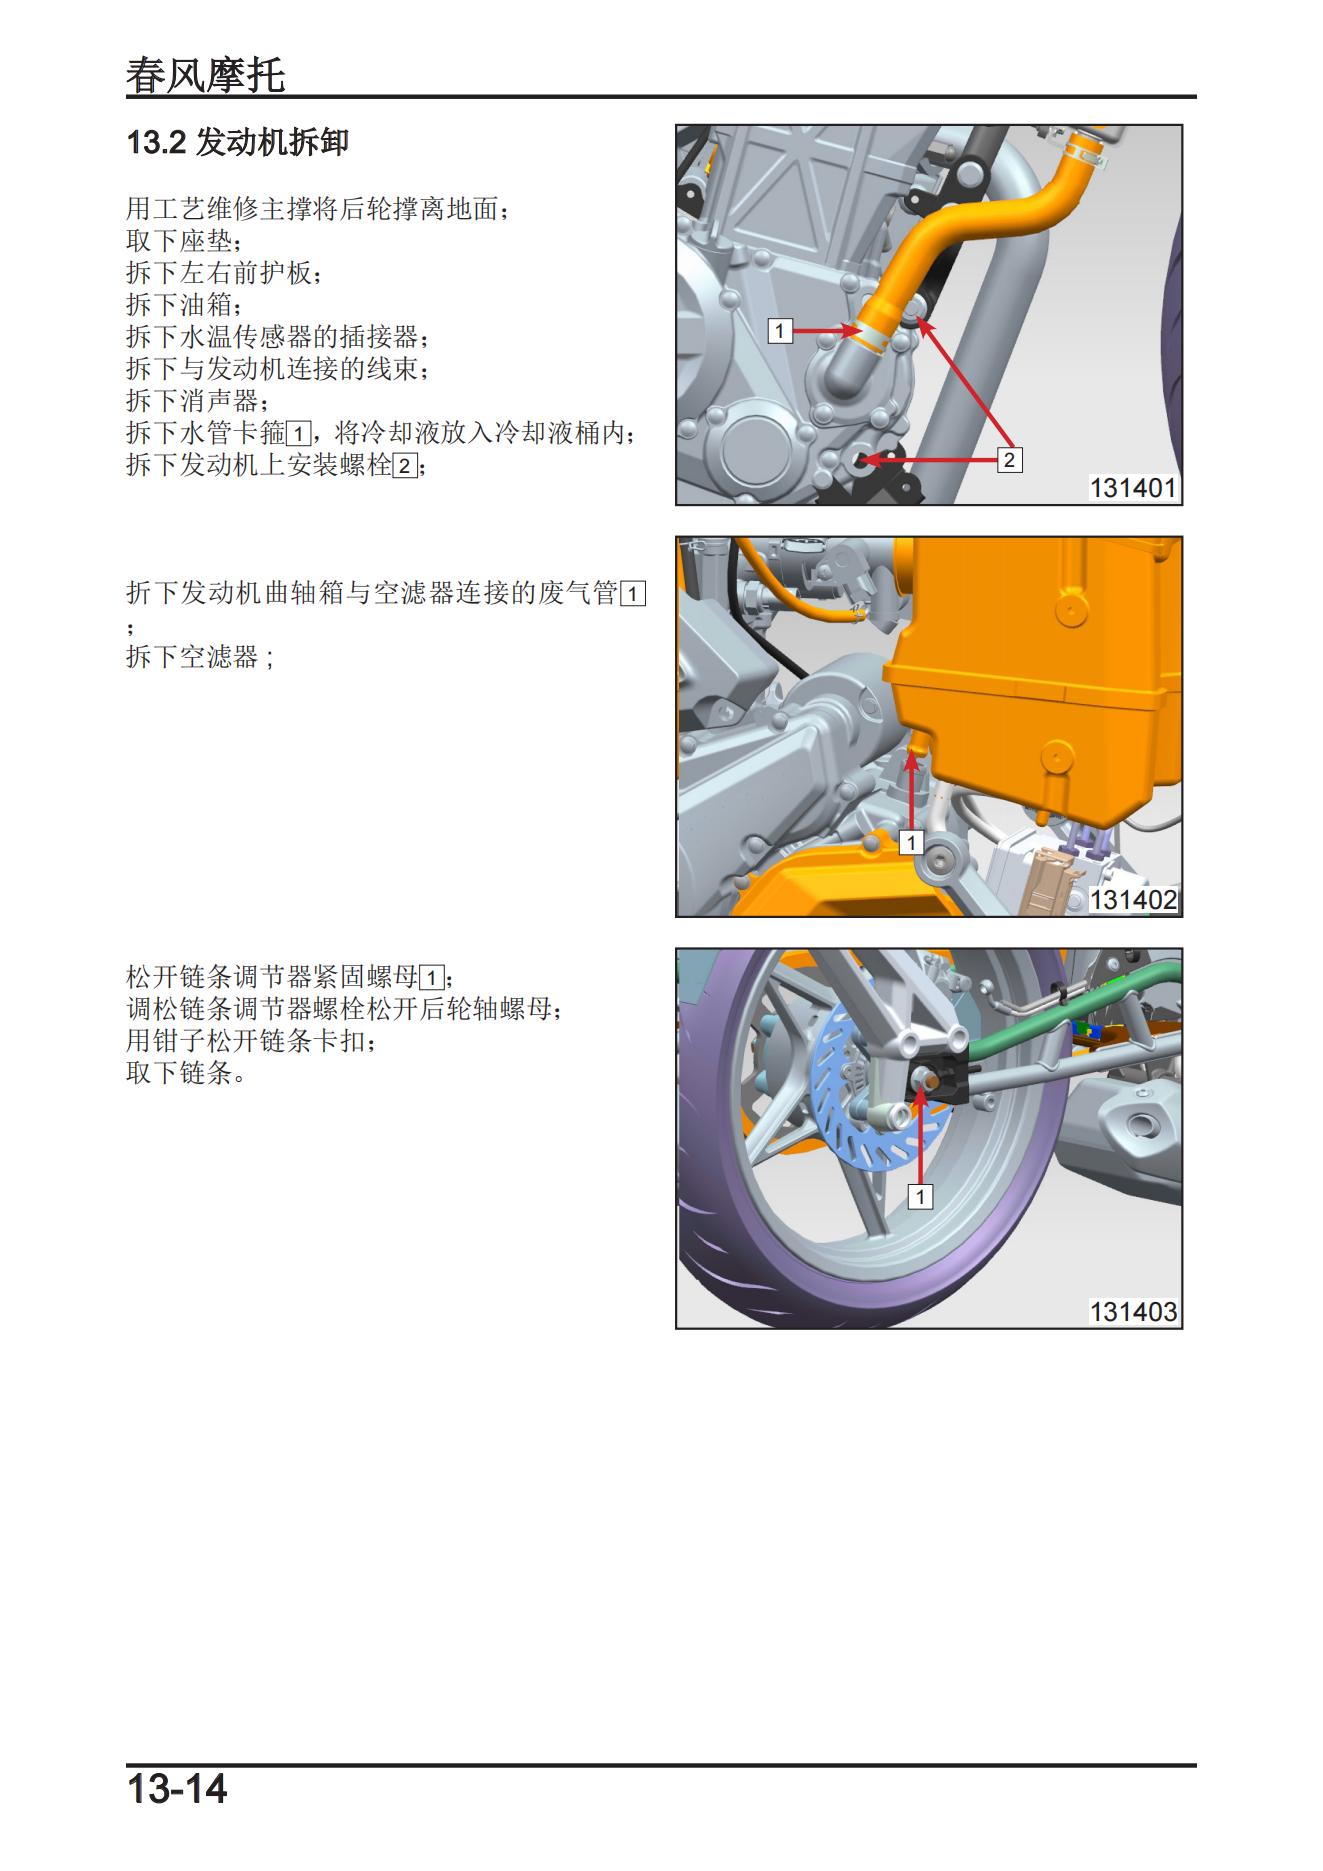 中文原版20-22春风250SR春风300SR维修手册插图3